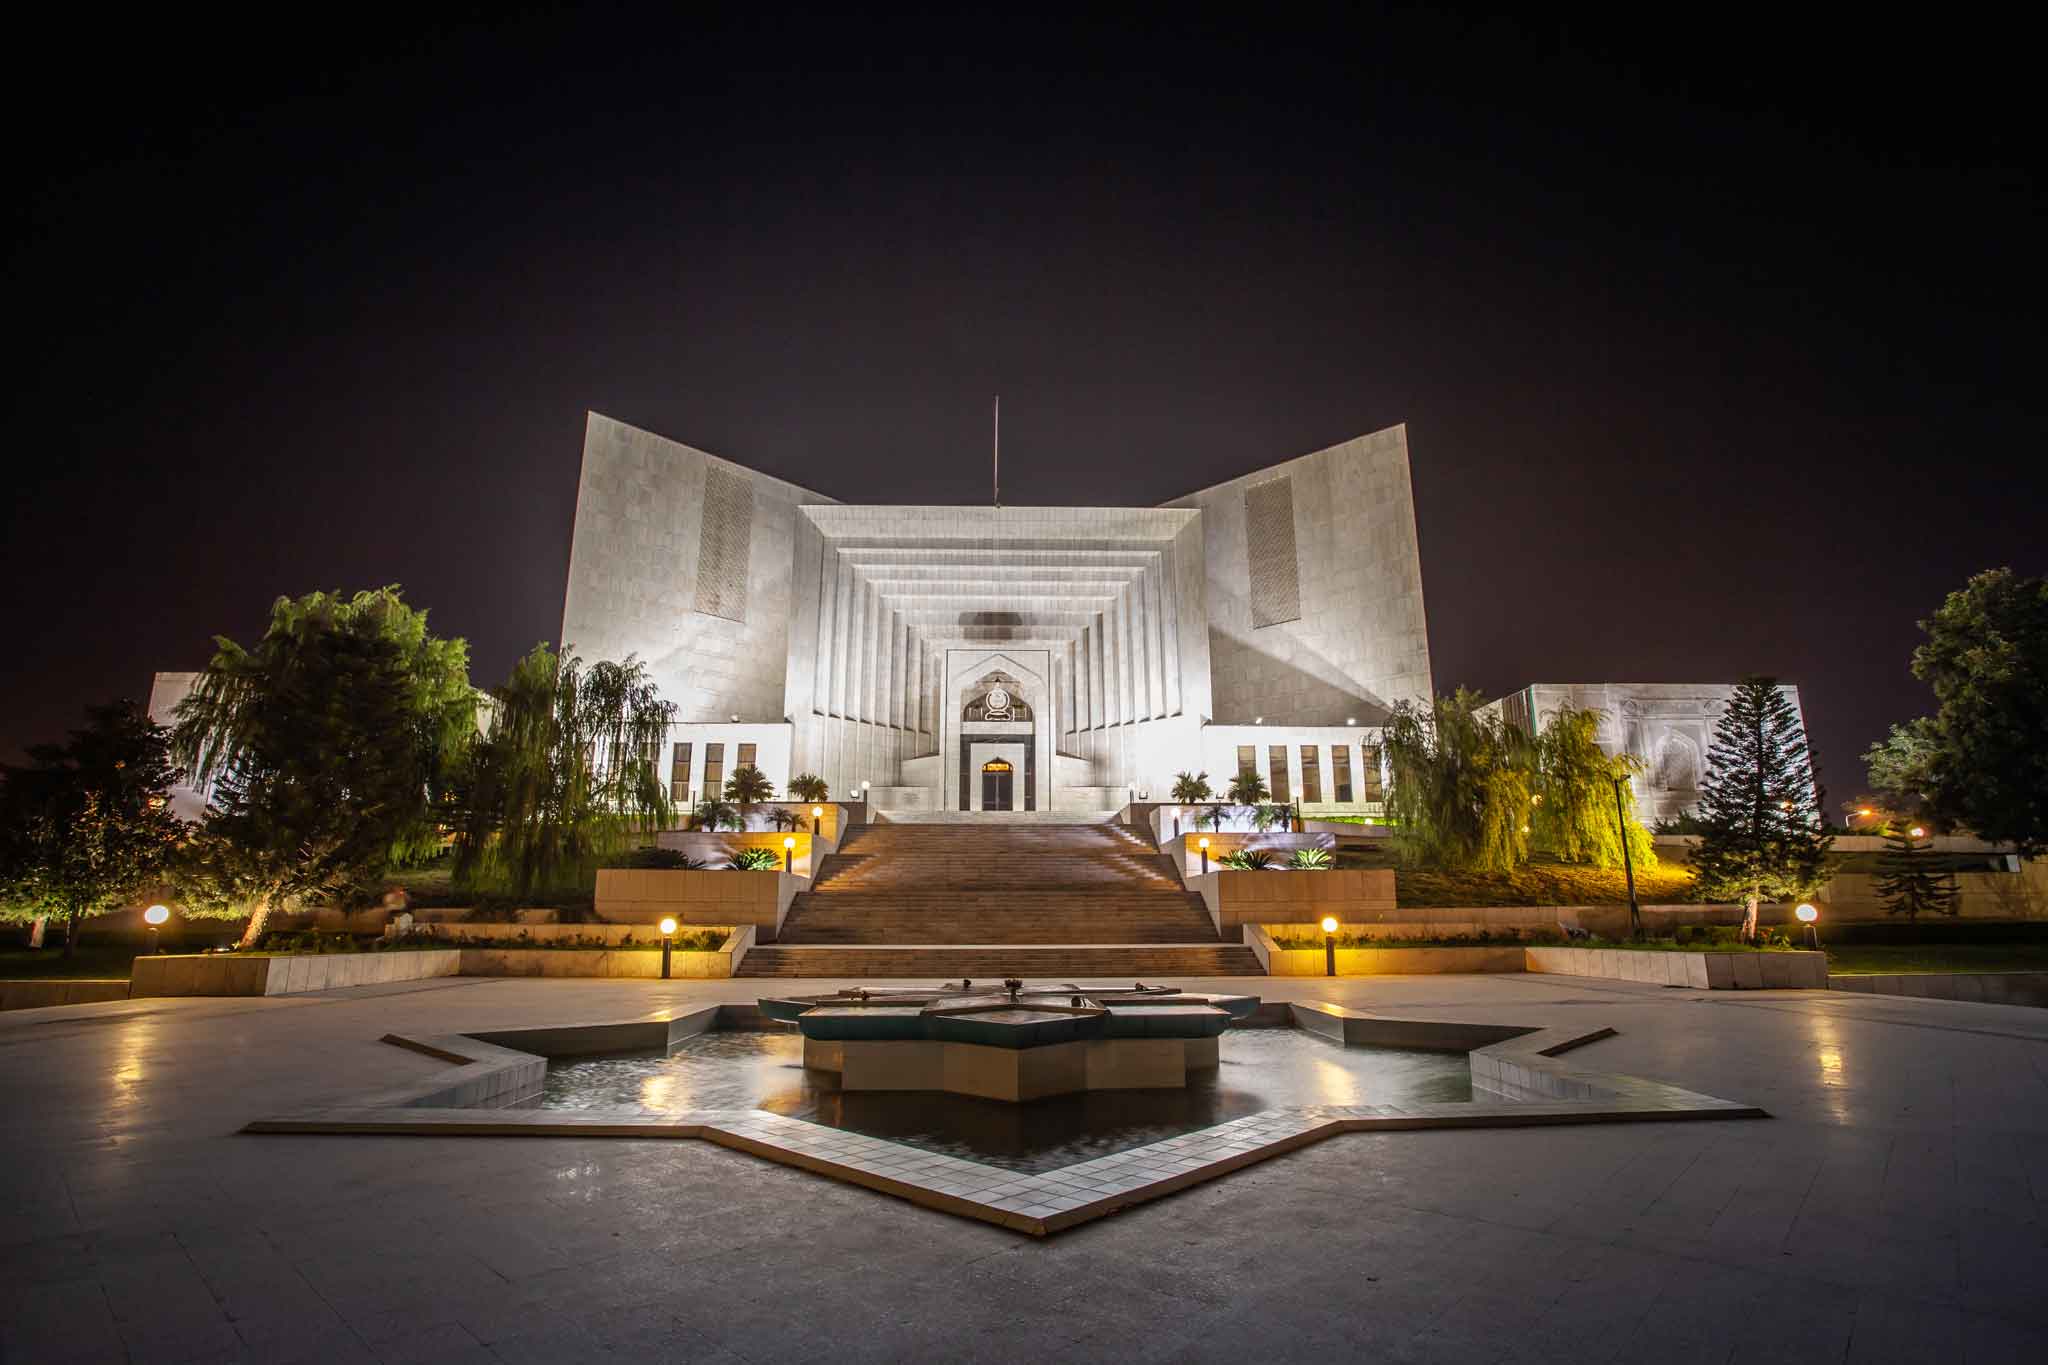 Pakistan’s Supreme Court Ends Lifelong Disqualification of Politicians